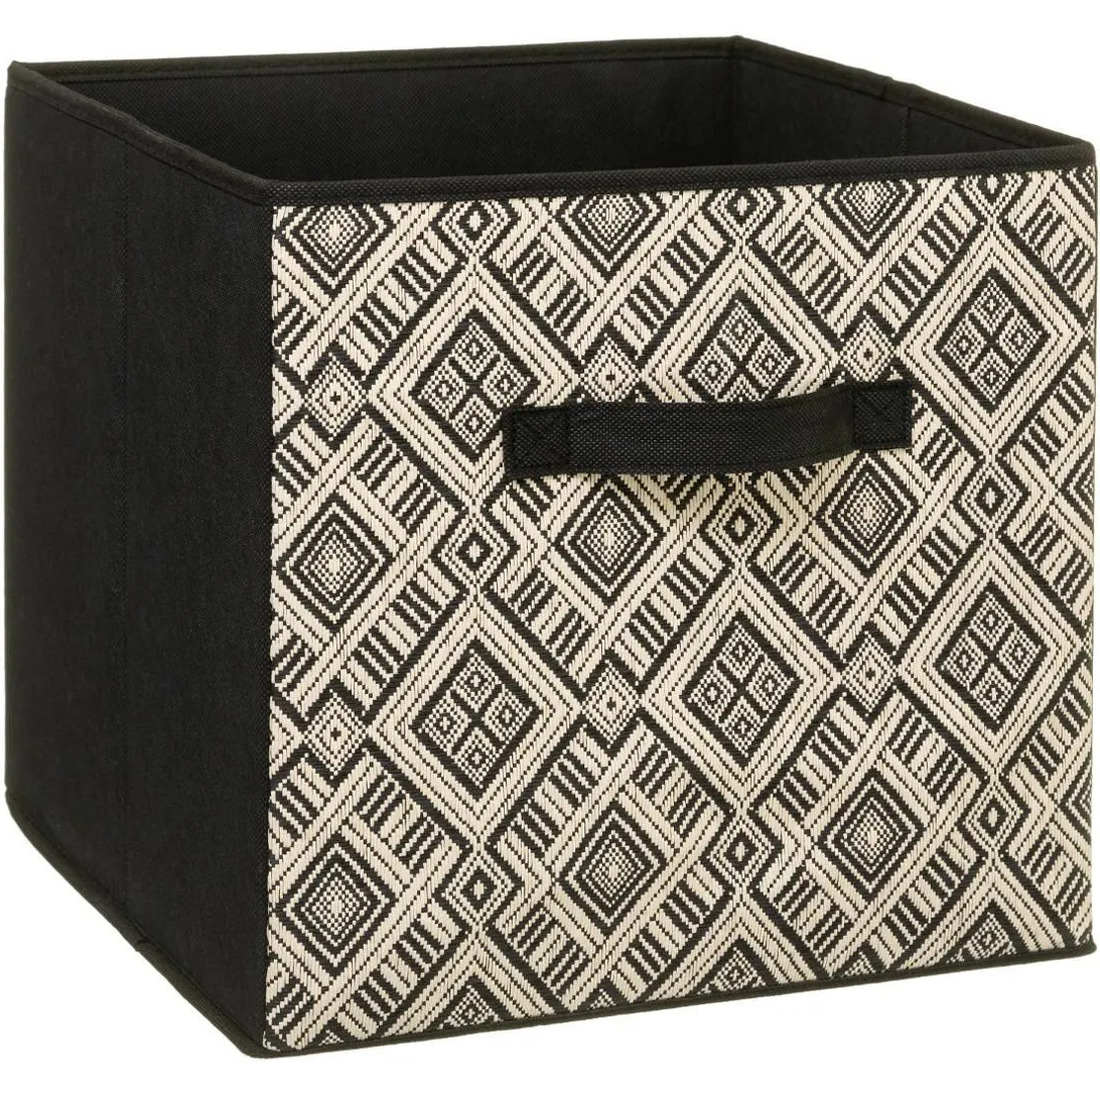 Opbergmand-kastmand 29 liter zwart-creme polyester 31 x 31 x 31 cm